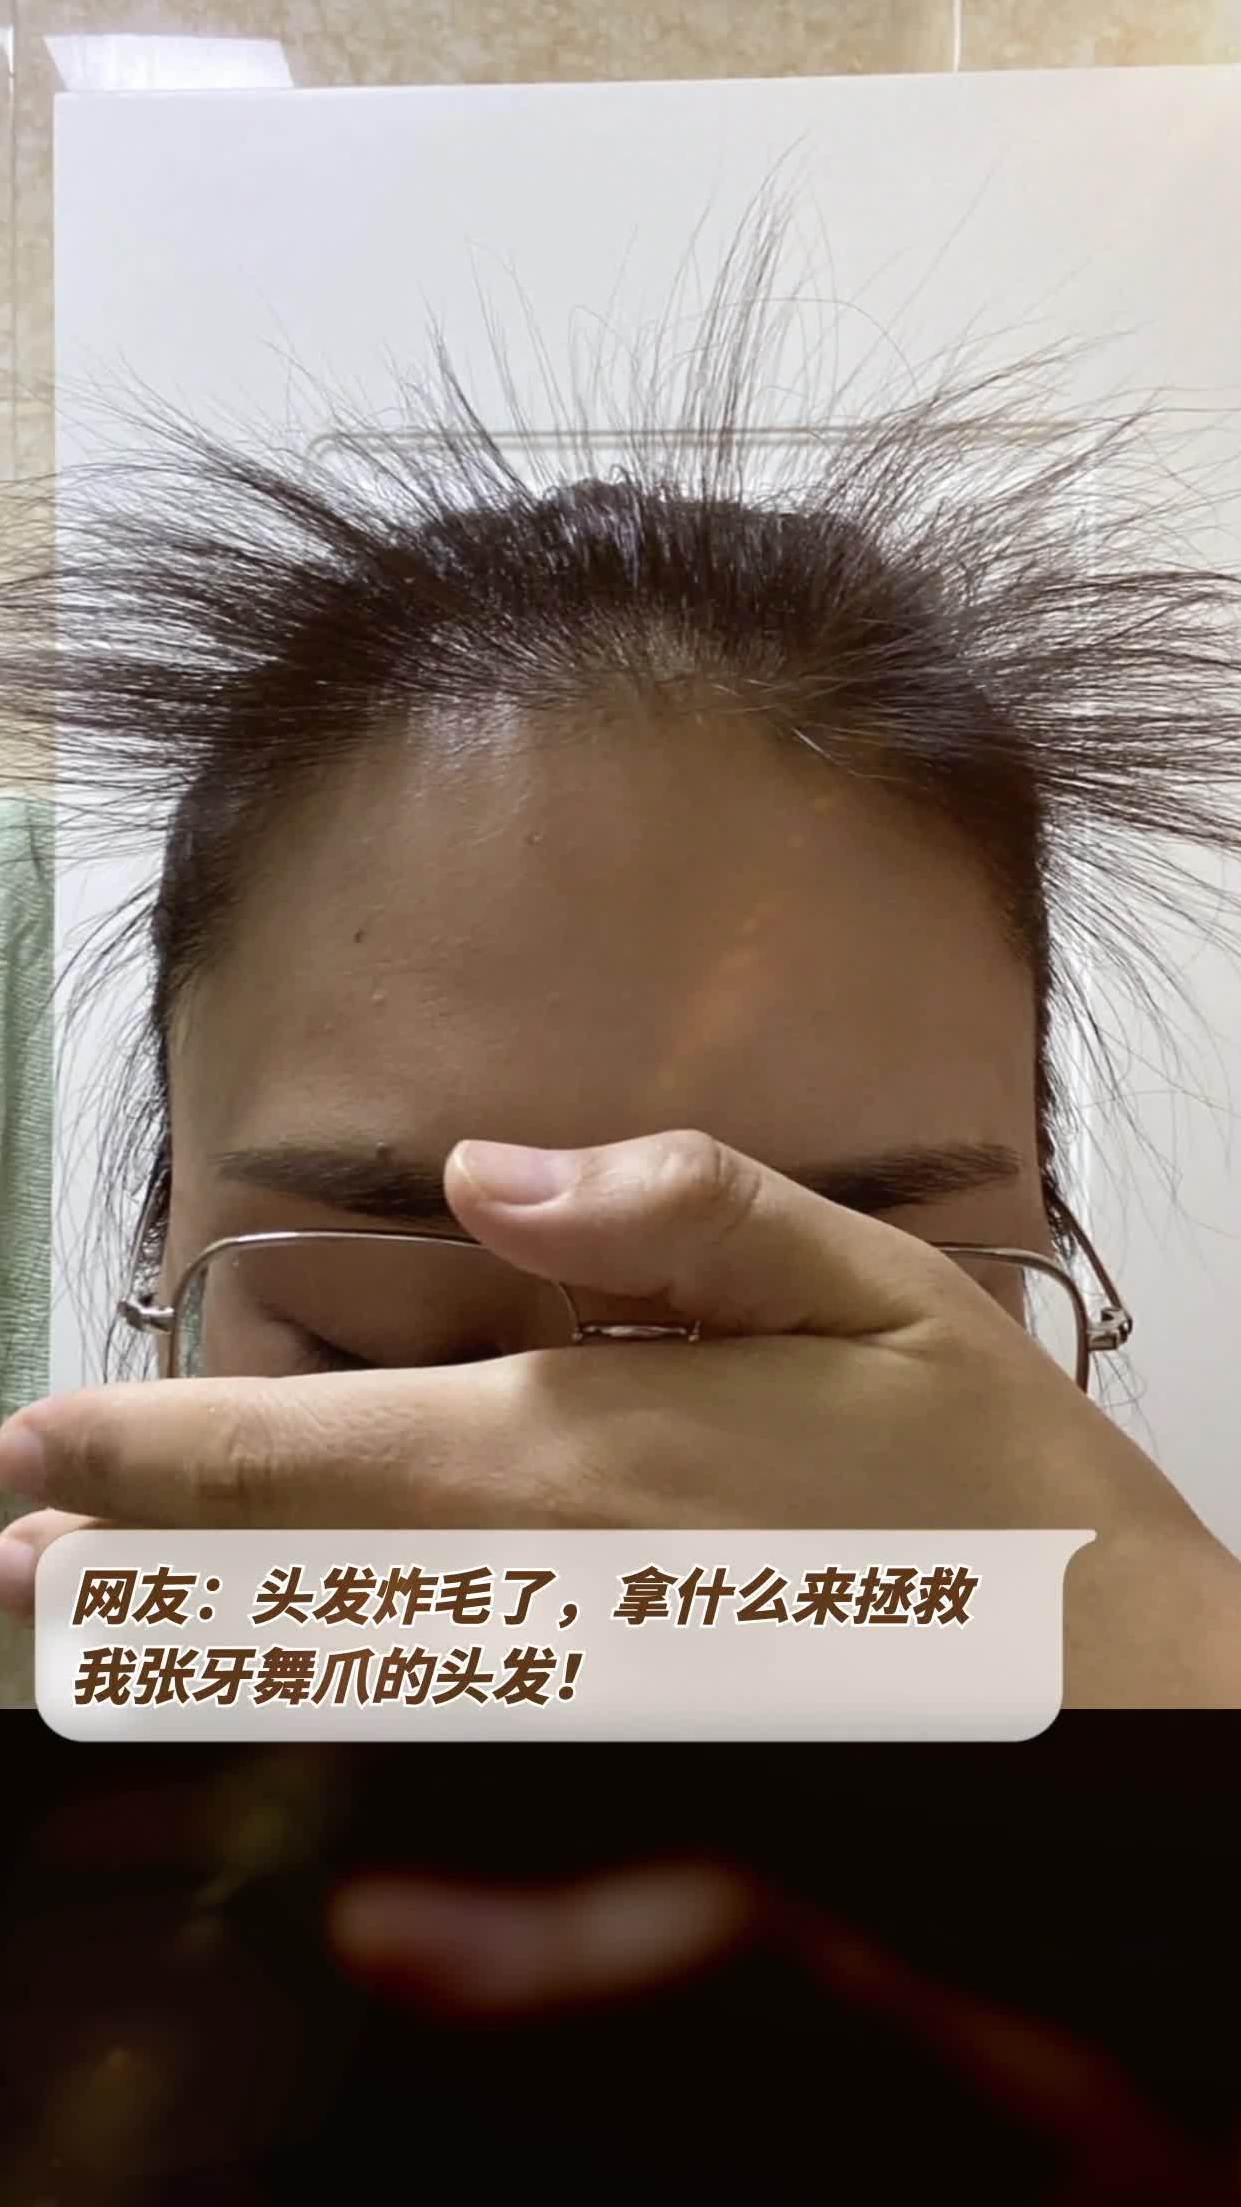 网友:头发炸毛了,拿什么来拯救我张牙舞爪的头发!